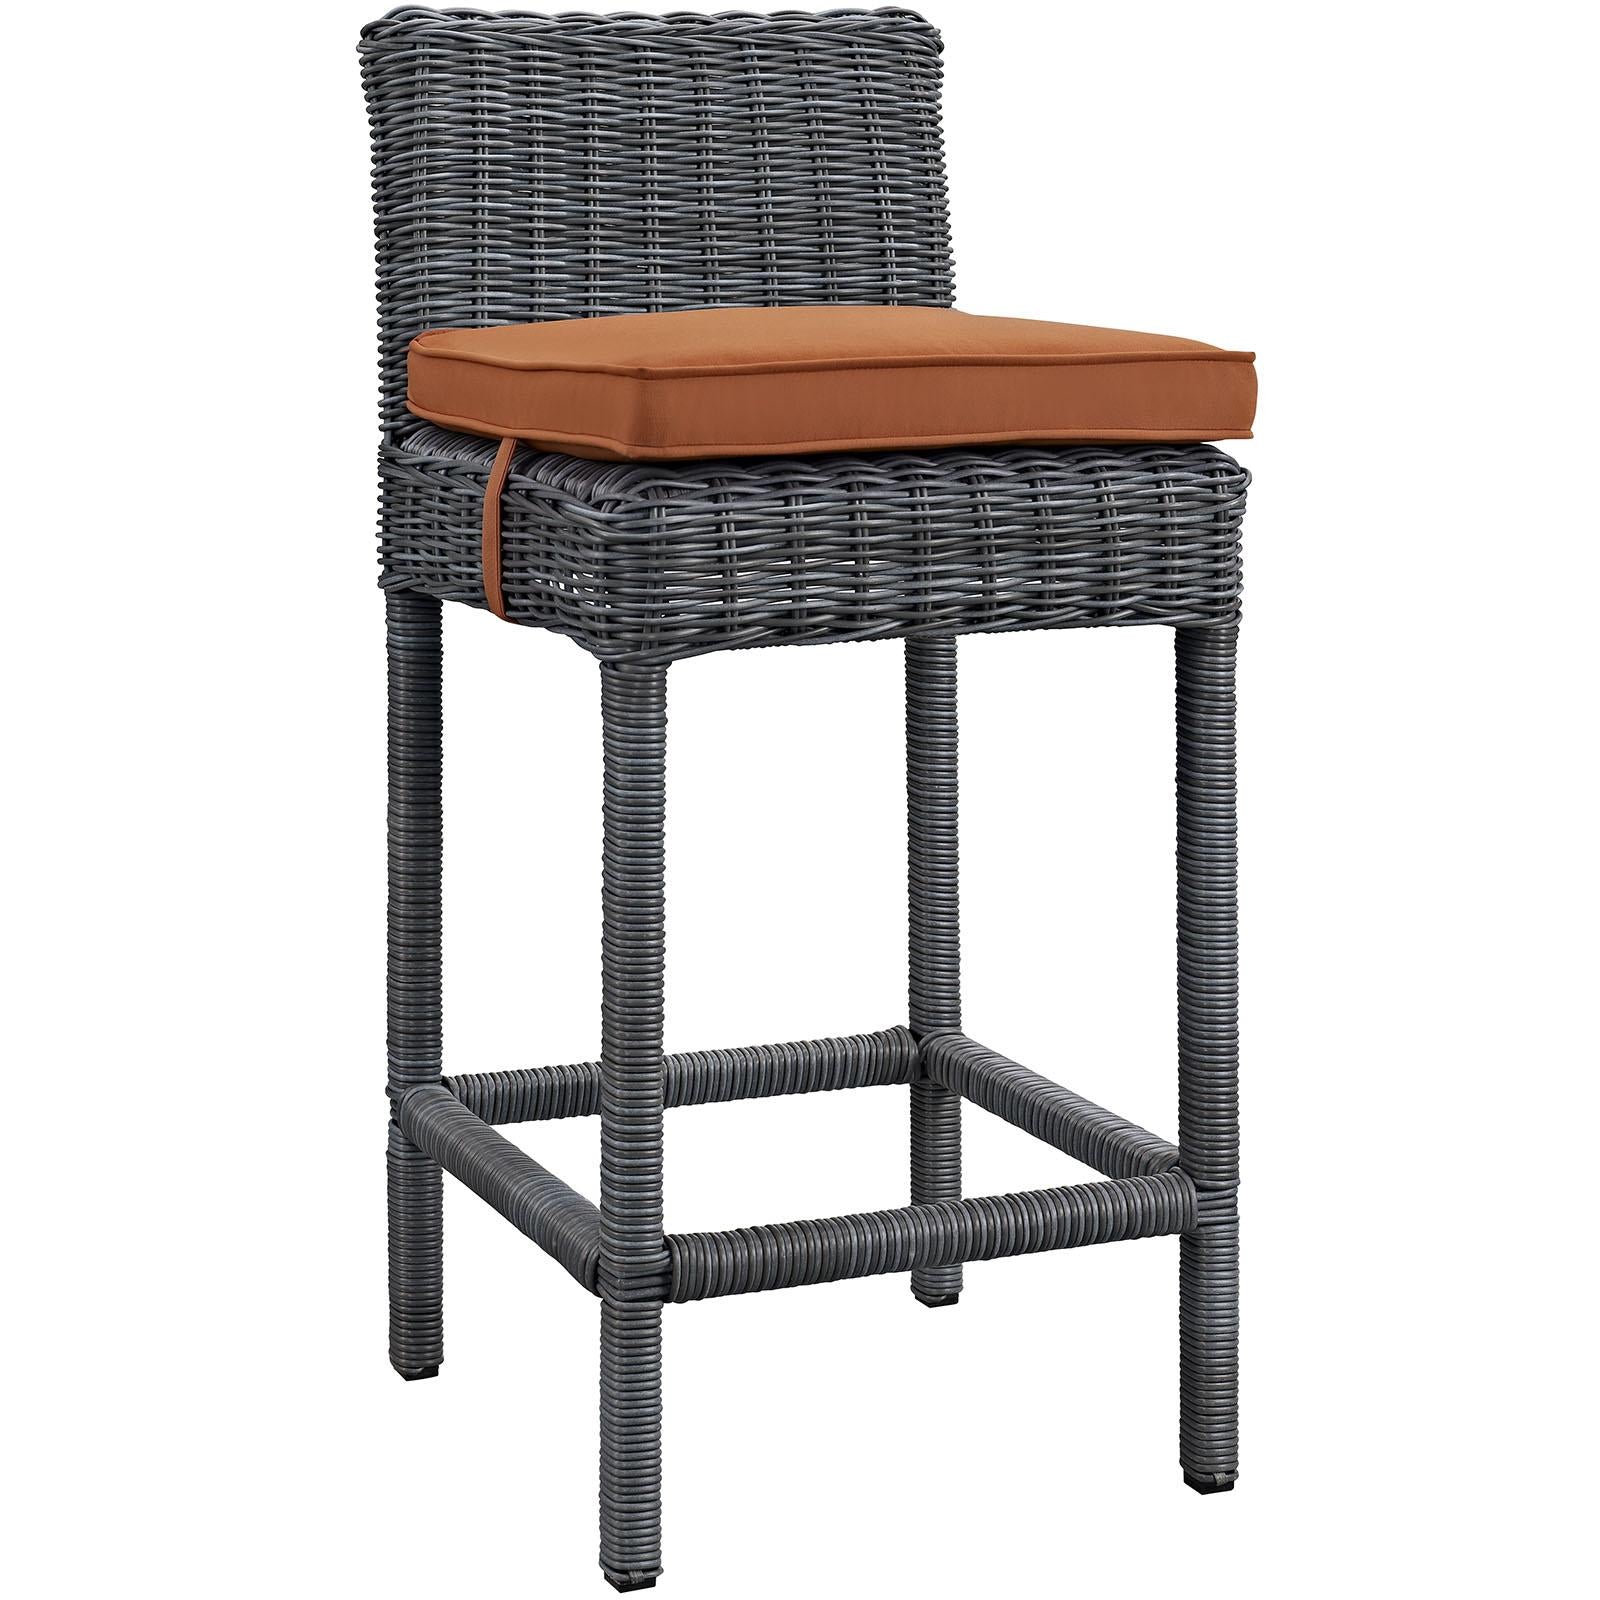 Modway Furniture Modern Summon Bar Stool Outdoor Patio Sunbrella® Set of 4 - EEI-2198